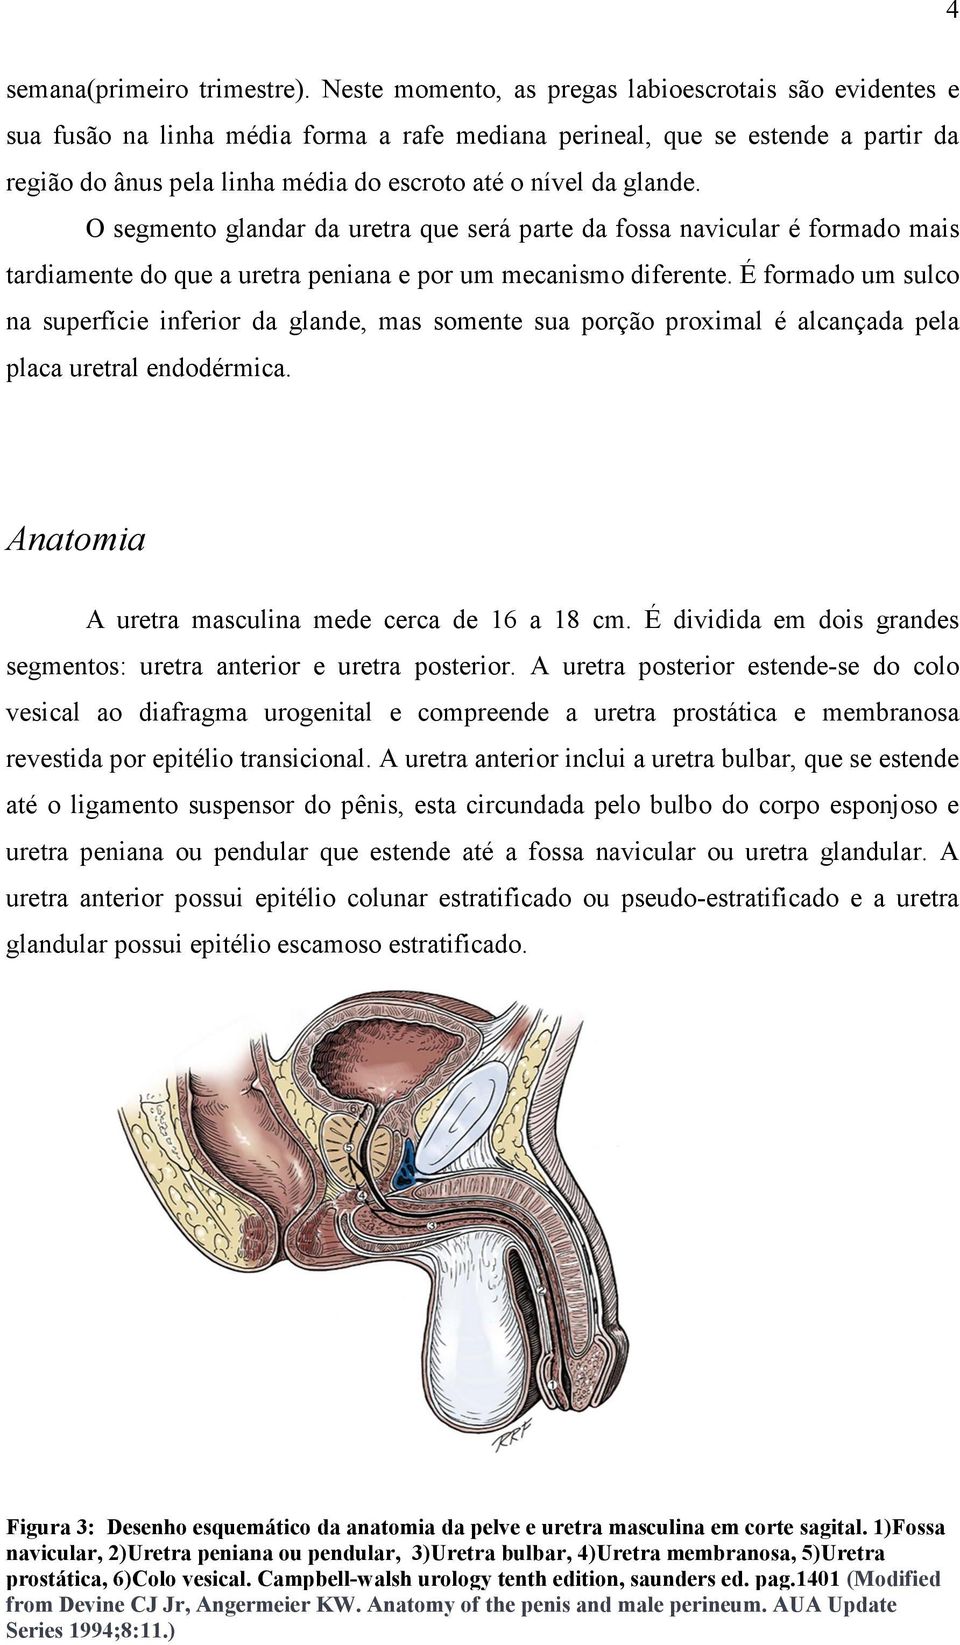 glande. O segmento glandar da uretra que será parte da fossa navicular é formado mais tardiamente do que a uretra peniana e por um mecanismo diferente.